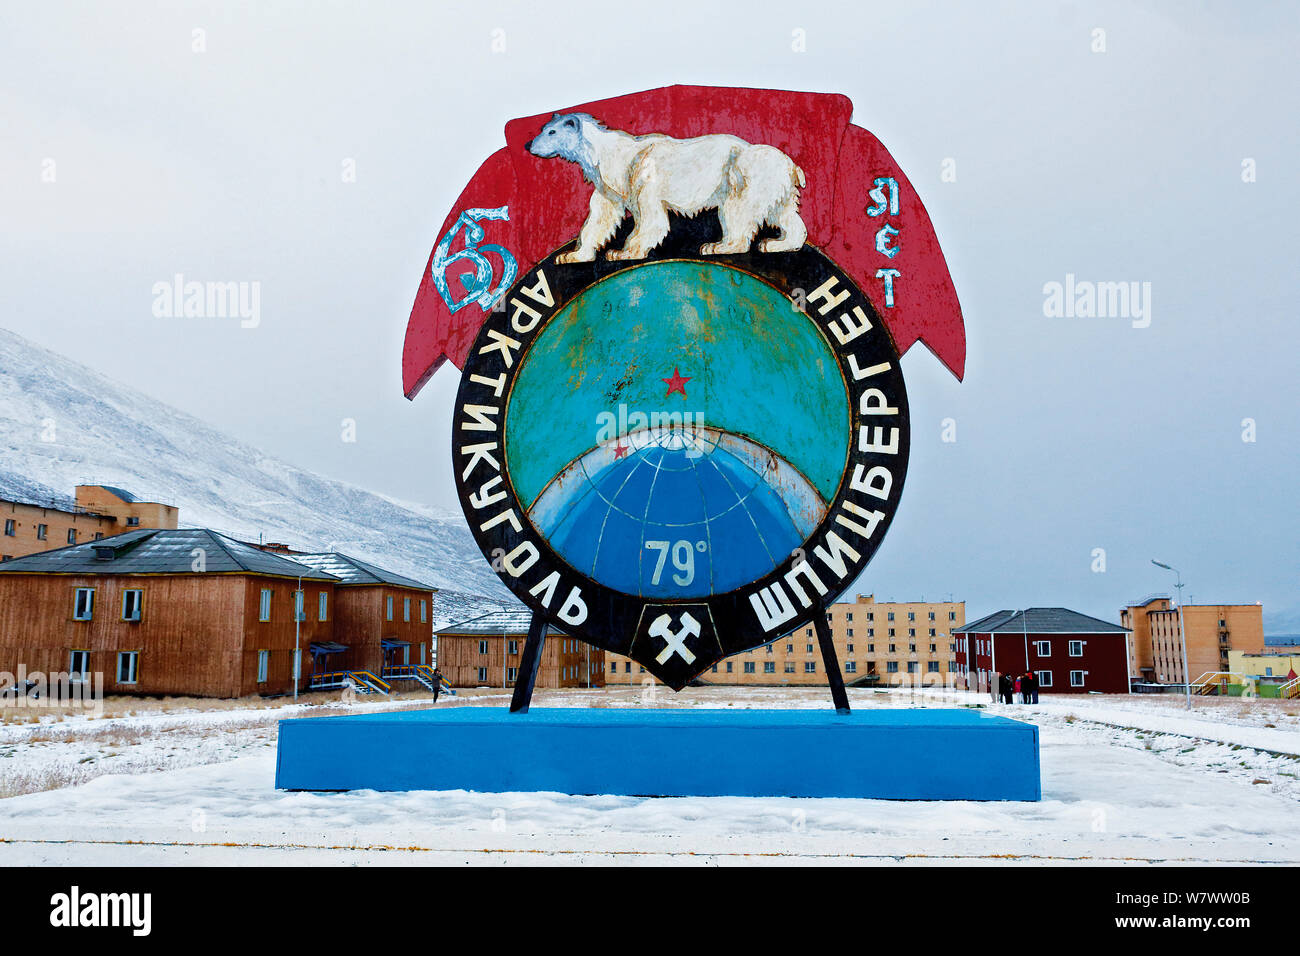 Règlement russe abandonné, Pyramiden Svalbard Banque D'Images